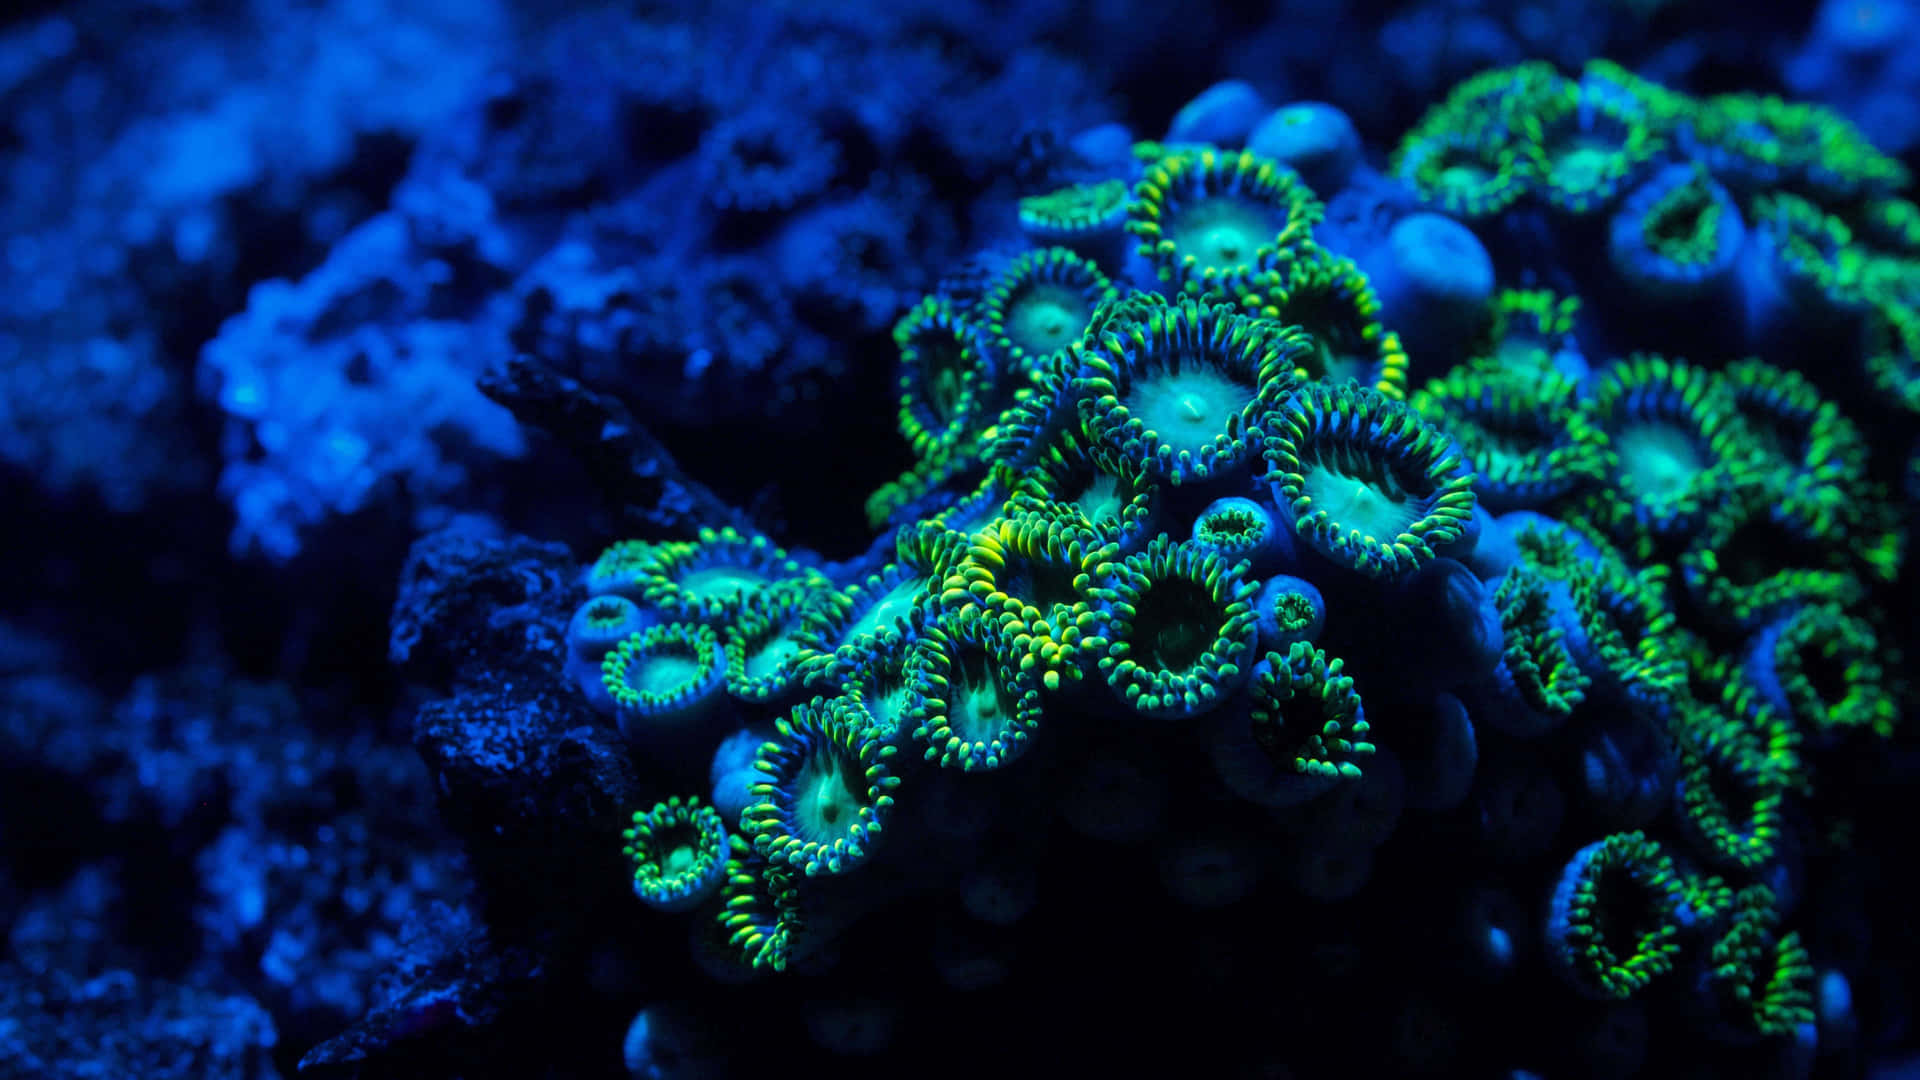 Unarrecife De Coral Lleno De Color Y Animado Con Peces Y Otras Formas De Vida Marina.